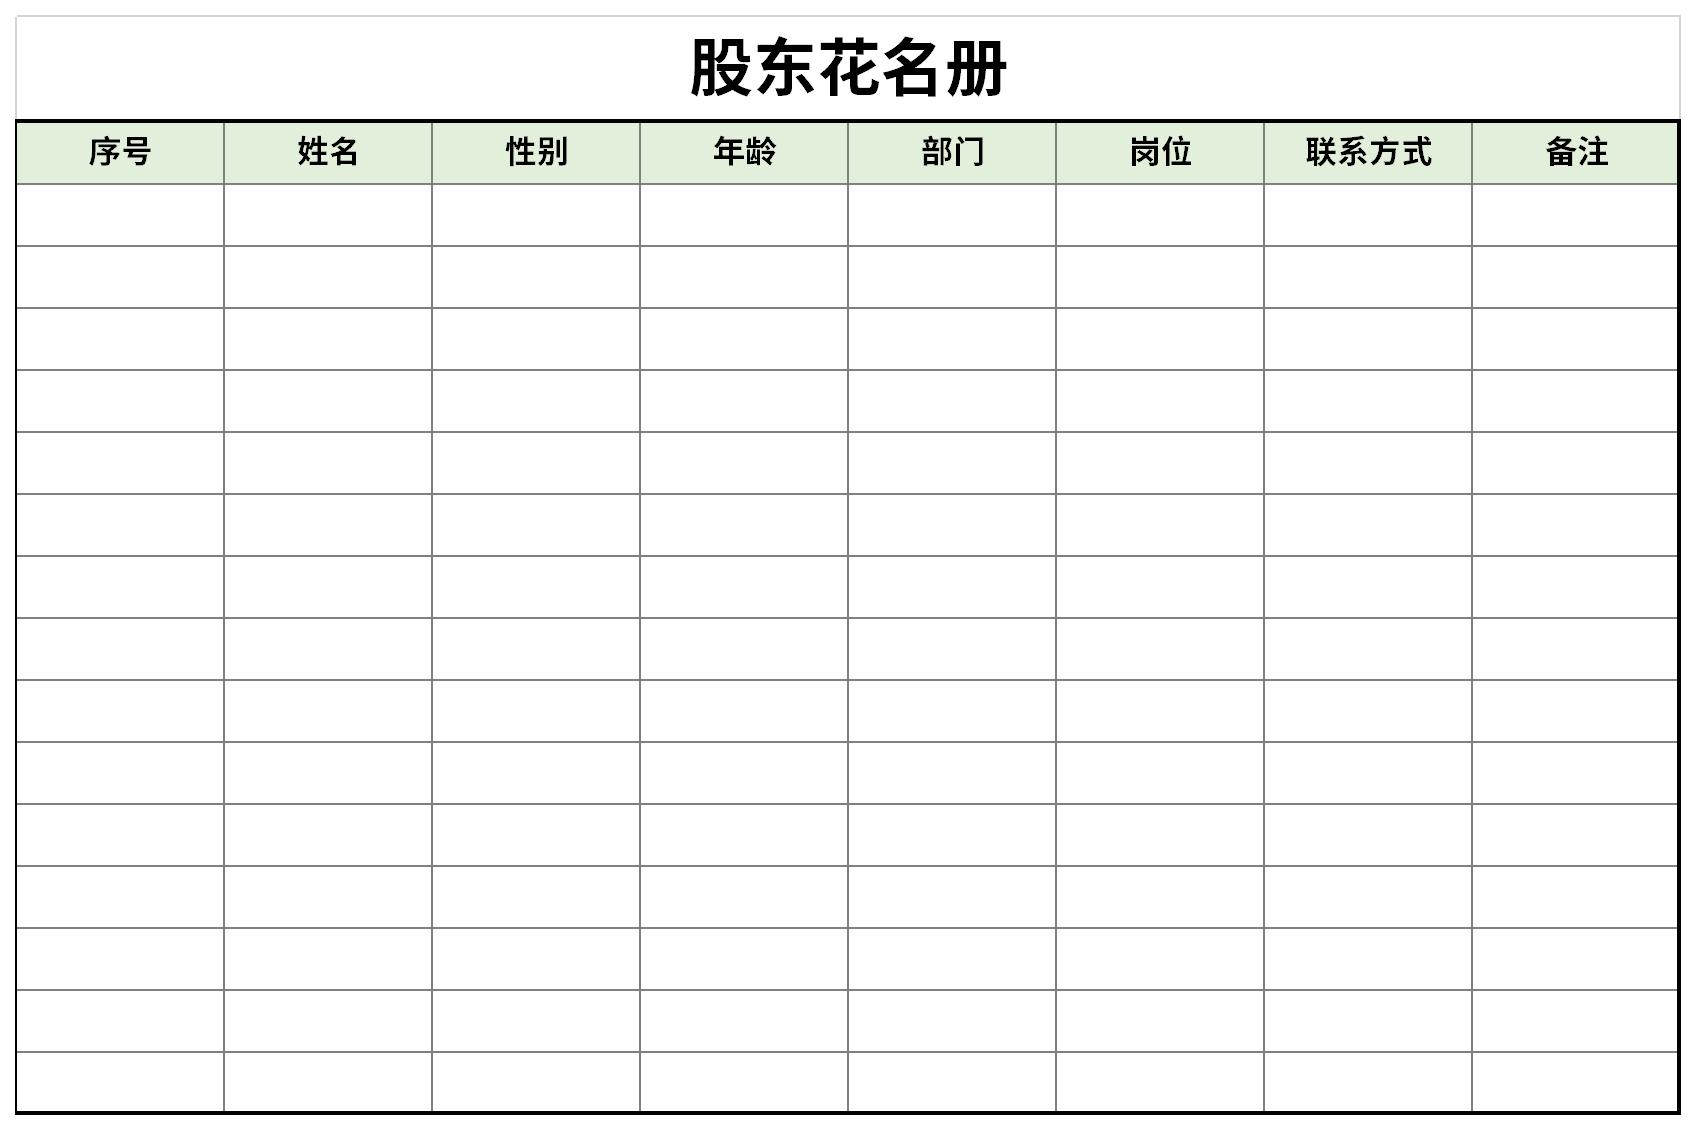 这是一套经过华军软件园精心筛选股东花名册表格下载,模板格式是xlsx